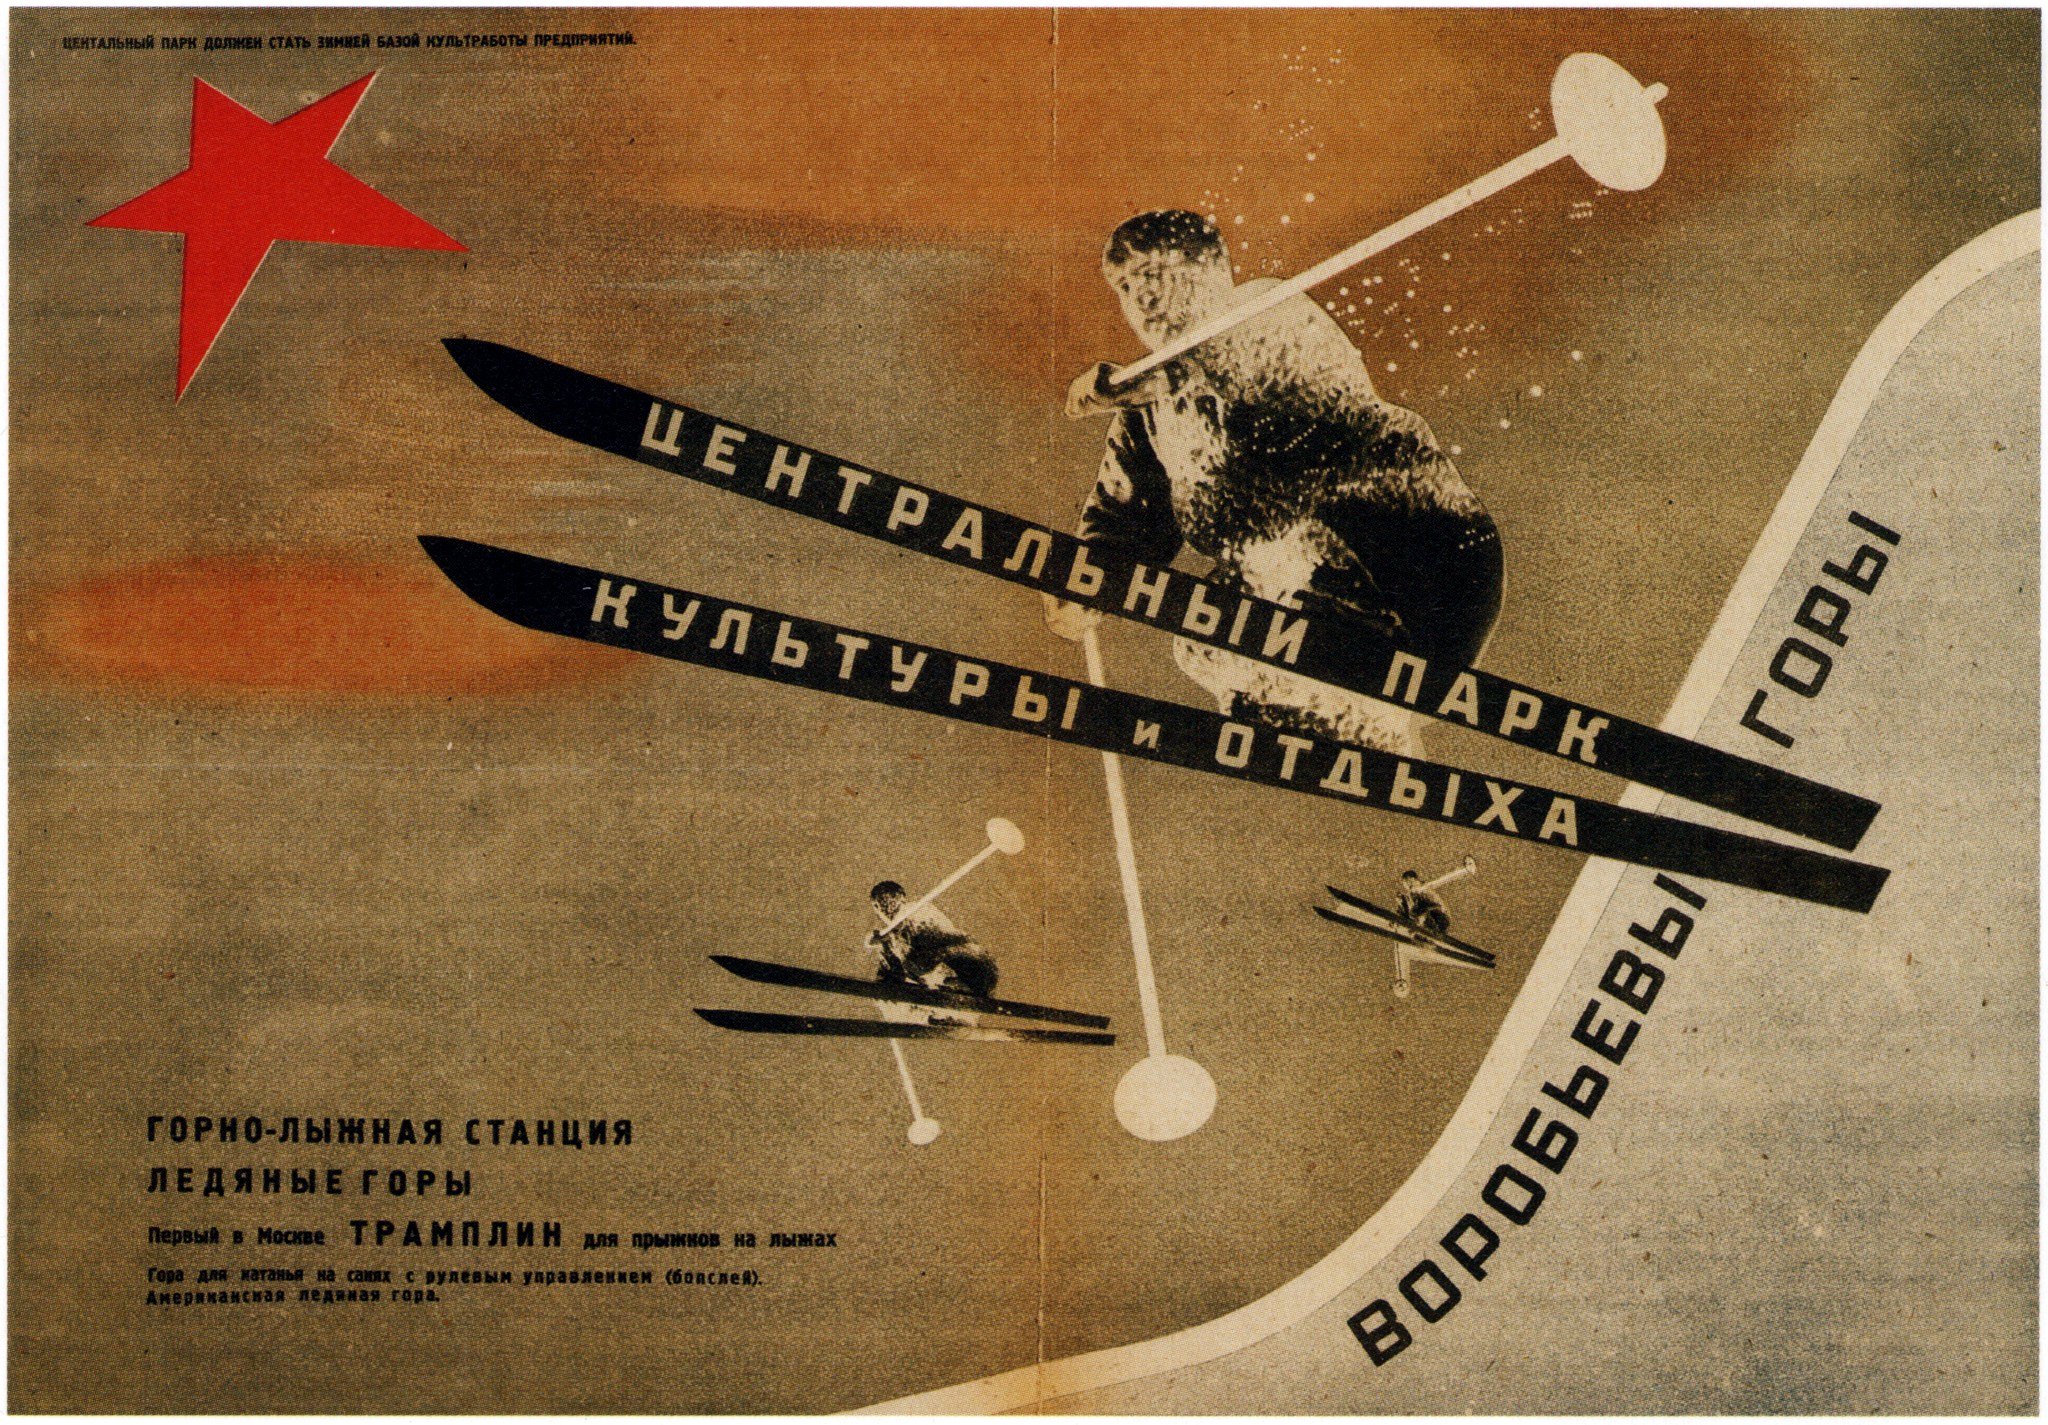 Центральный Парк Культуры и Отдыха им. Горького by El Lissitzky - 1931 - - 